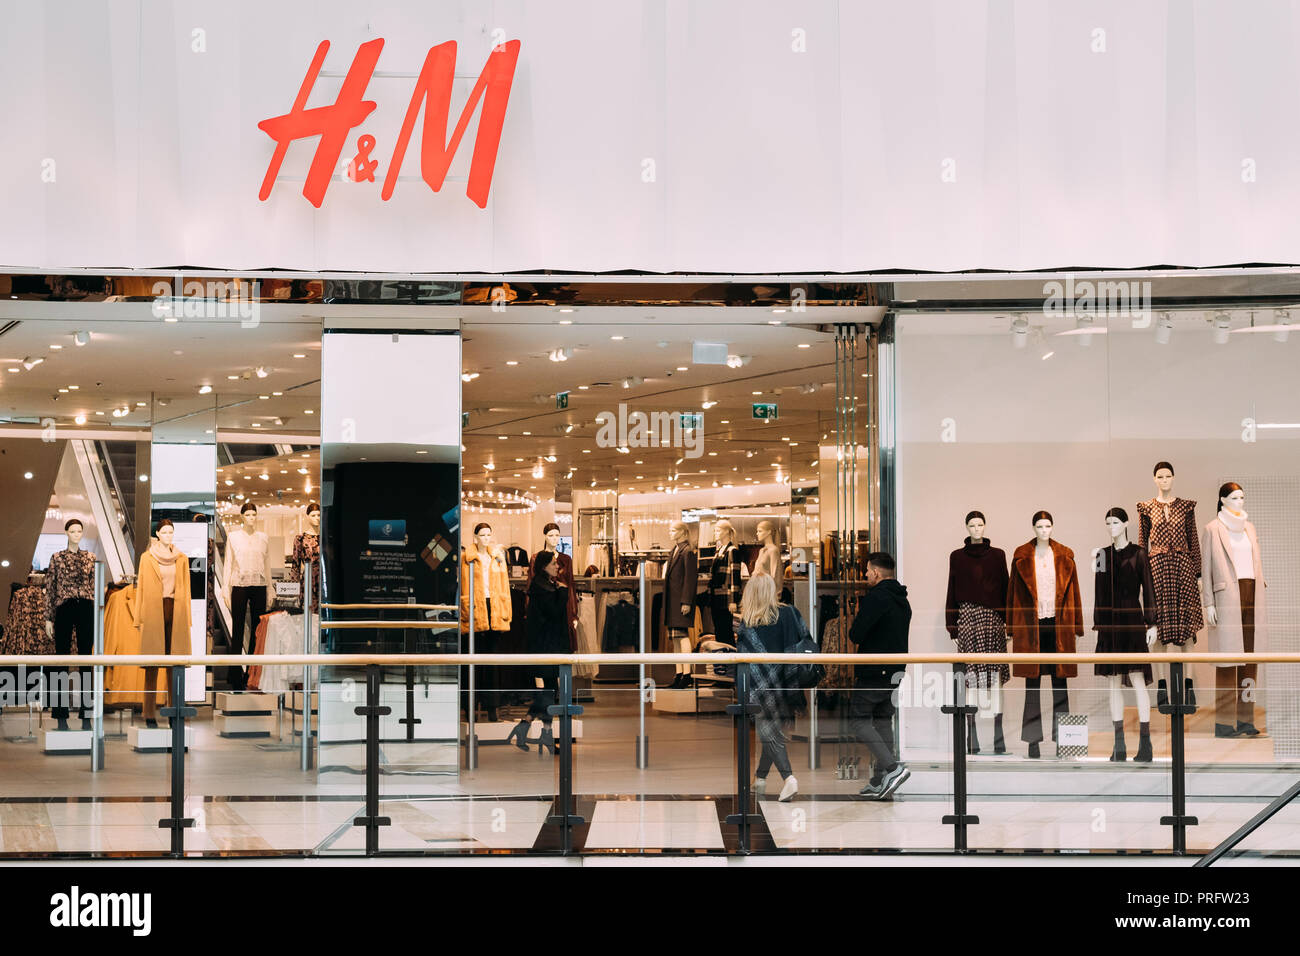 Warschau, Polen - 27. September 2018: die Menschen zu Fuß in der Nähe von  H&M Hennes & Mauritz Store in der Shopping Mall Stockfotografie - Alamy